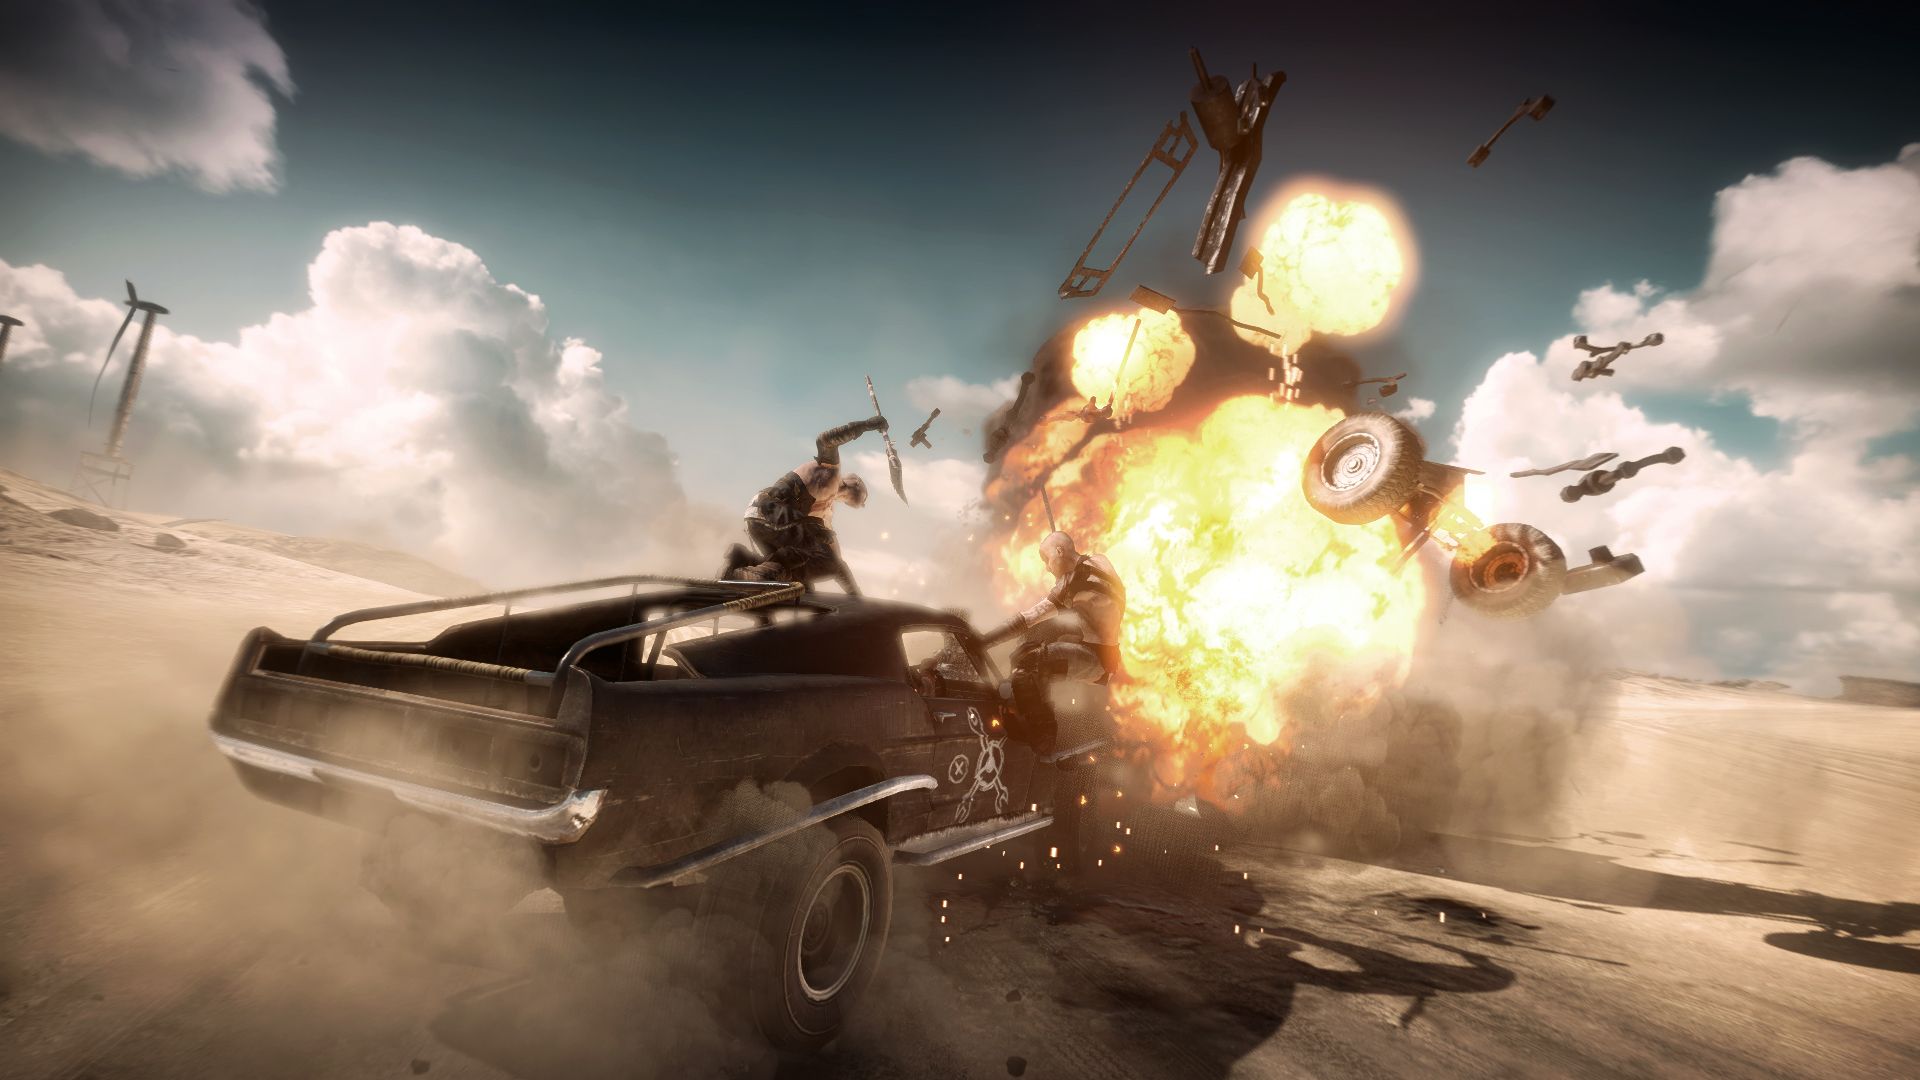 Mad Max - Vehicular Warfare